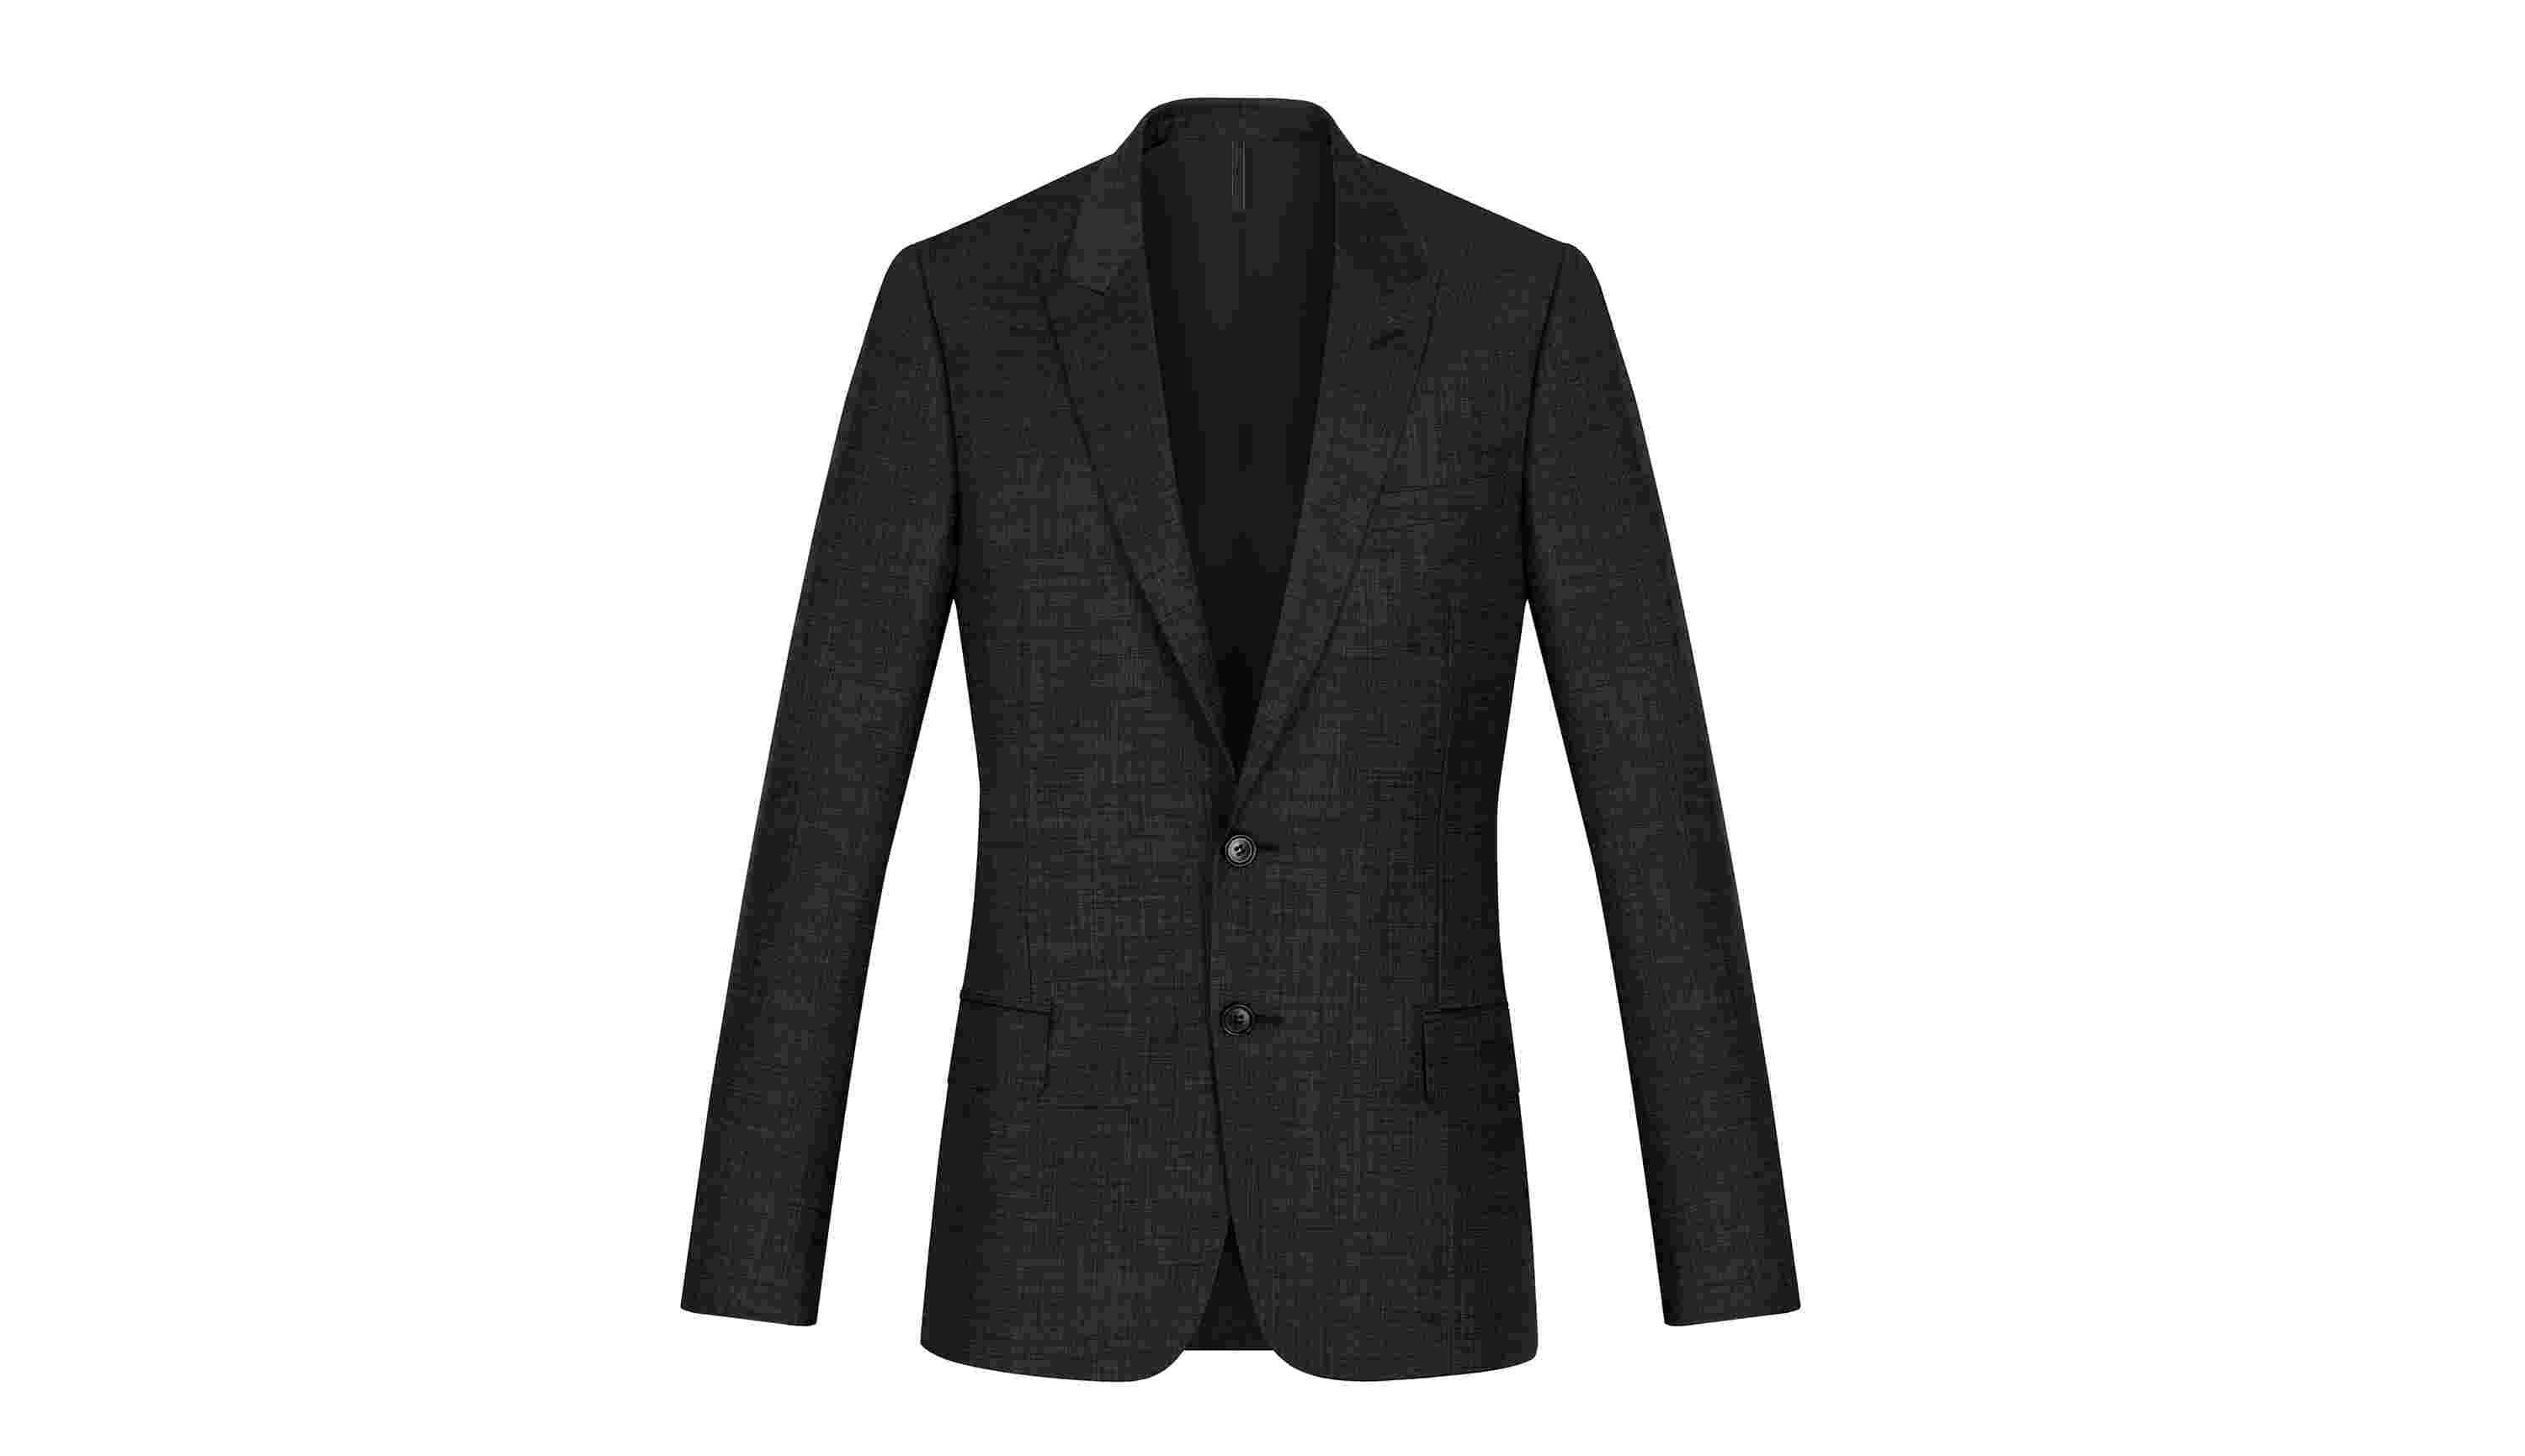 Black Super 140 Mottled Wool 2-Button Jacket, Peak Lapel